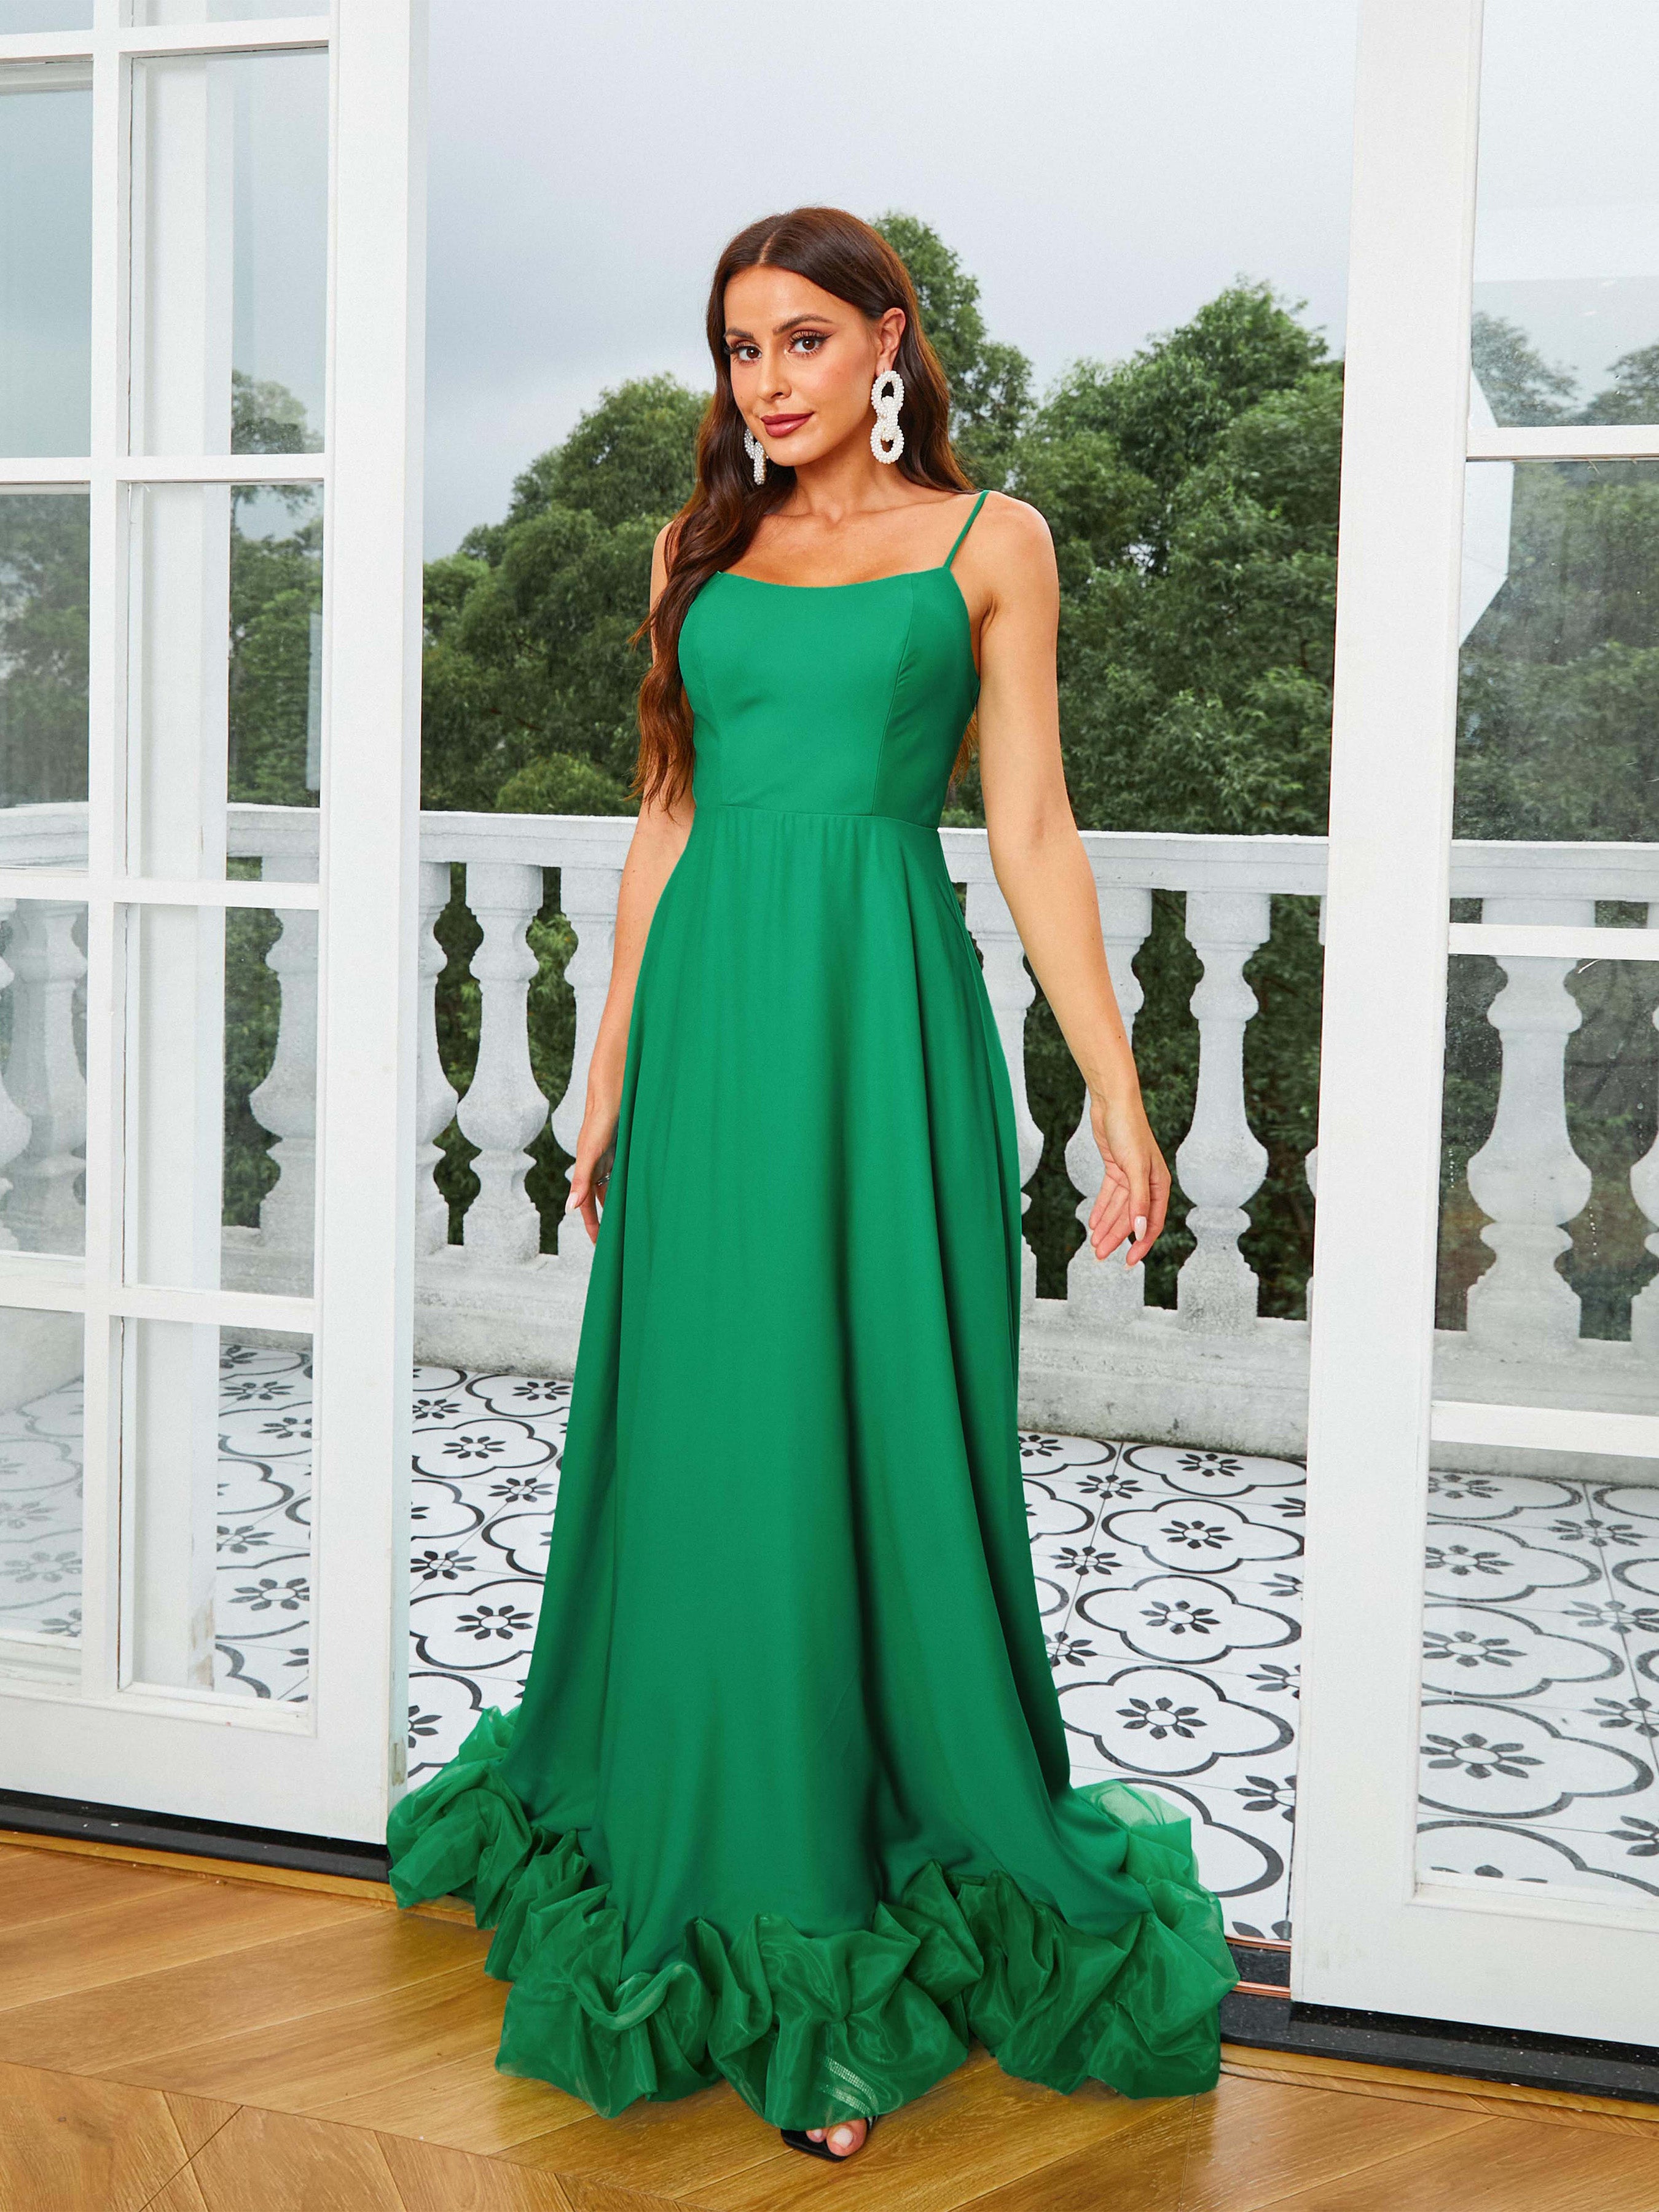 MISSORD Spaghetti Straps Green Prom Dress